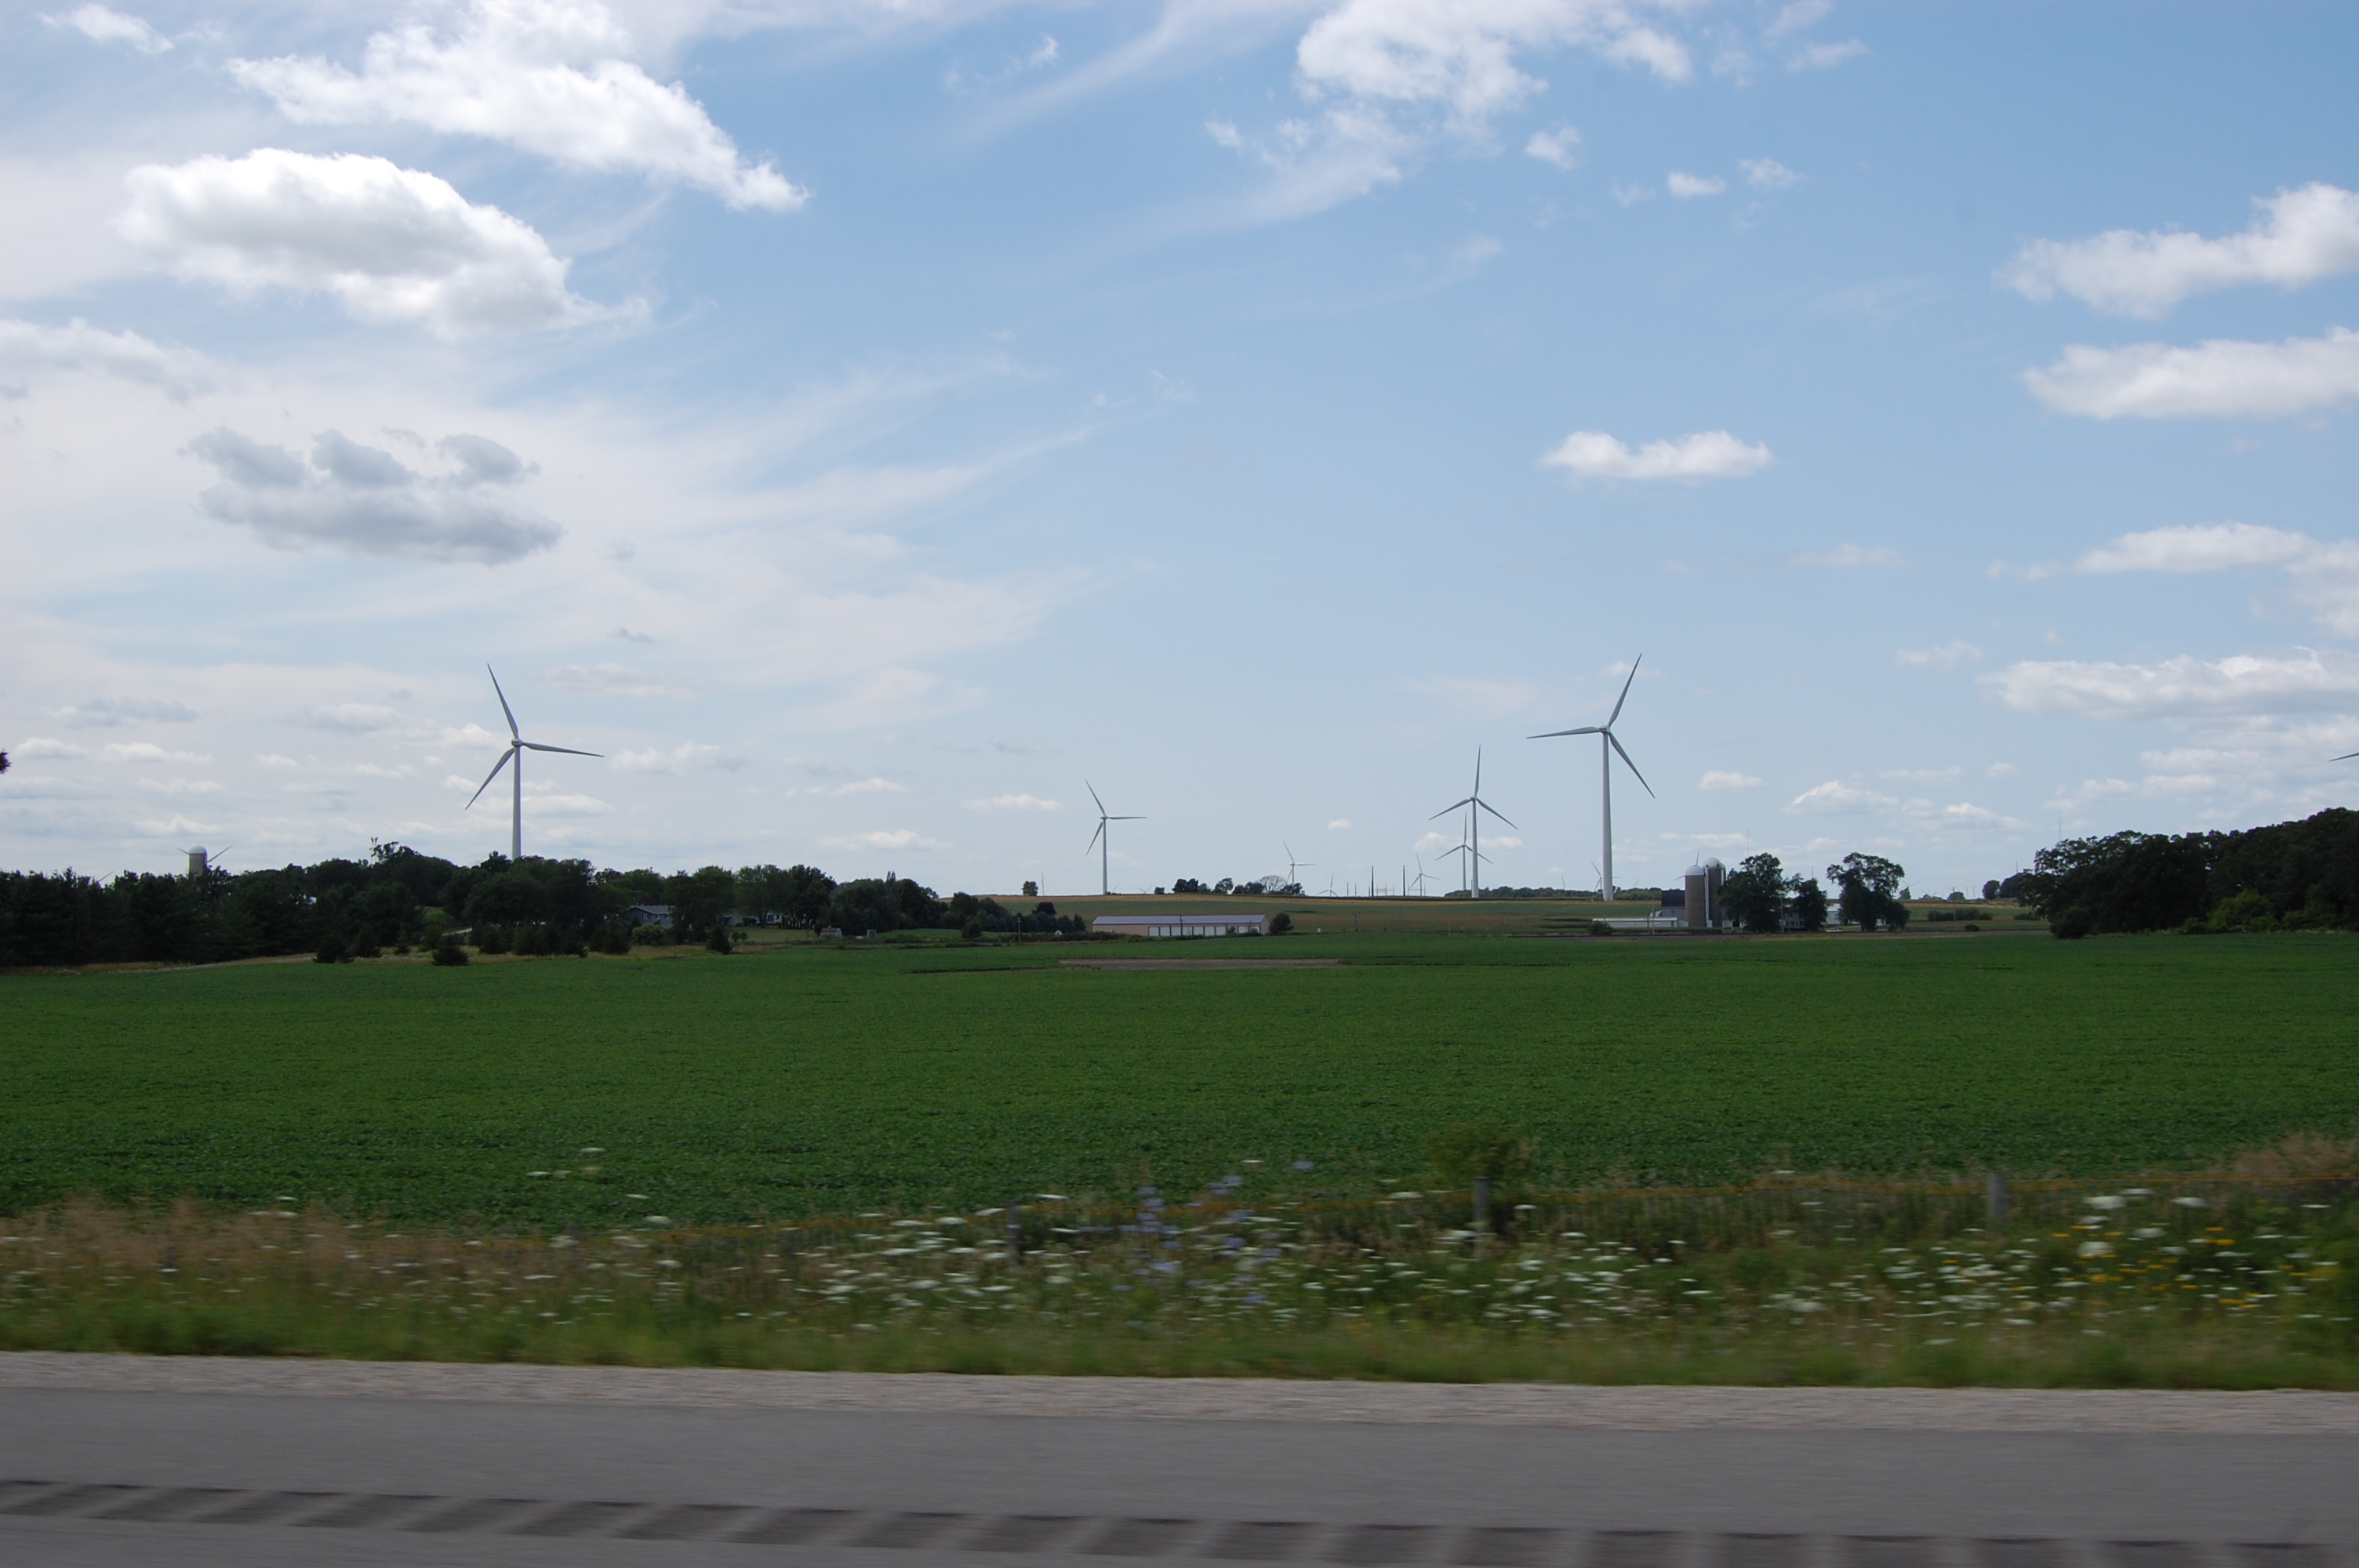 dsc_0263.jpg - Windmills in Wisconsin